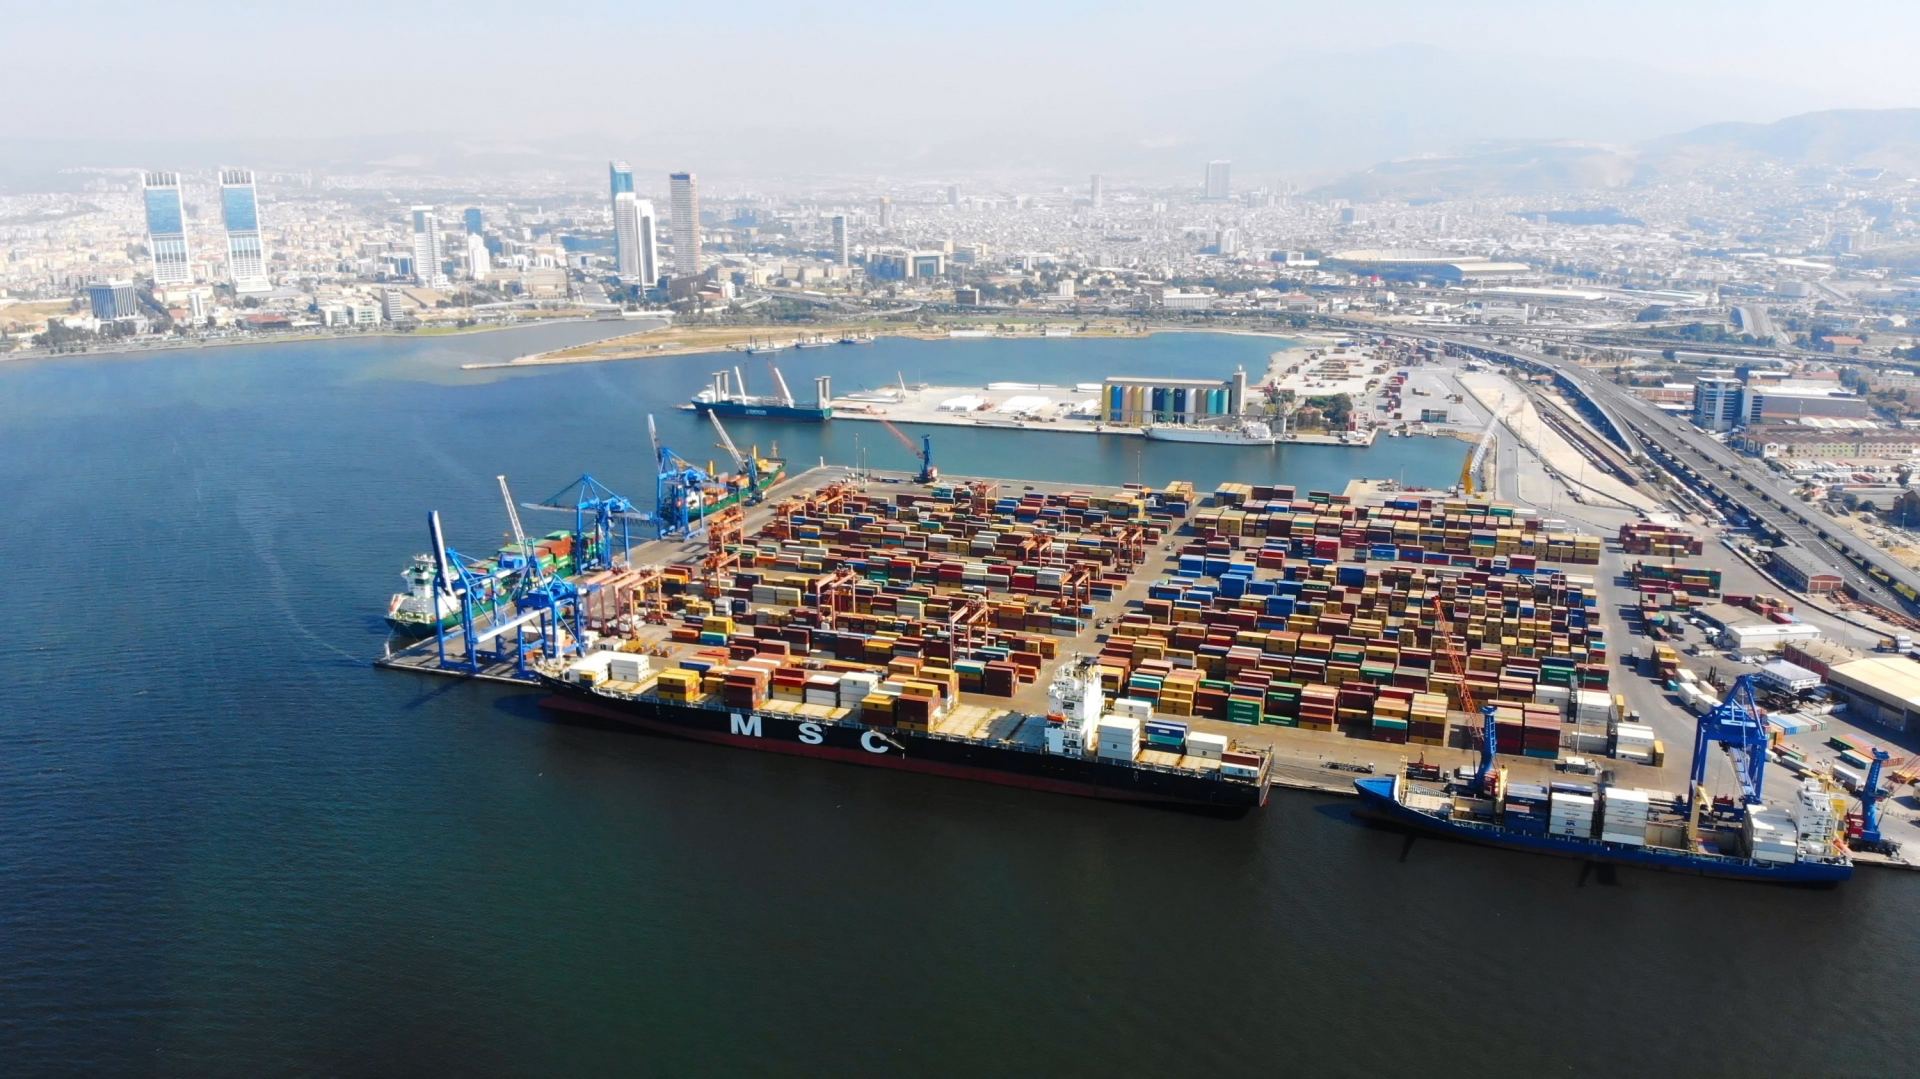 Обнародована перевалка портами Турции грузов из Китая в январе-мае 2022 г.